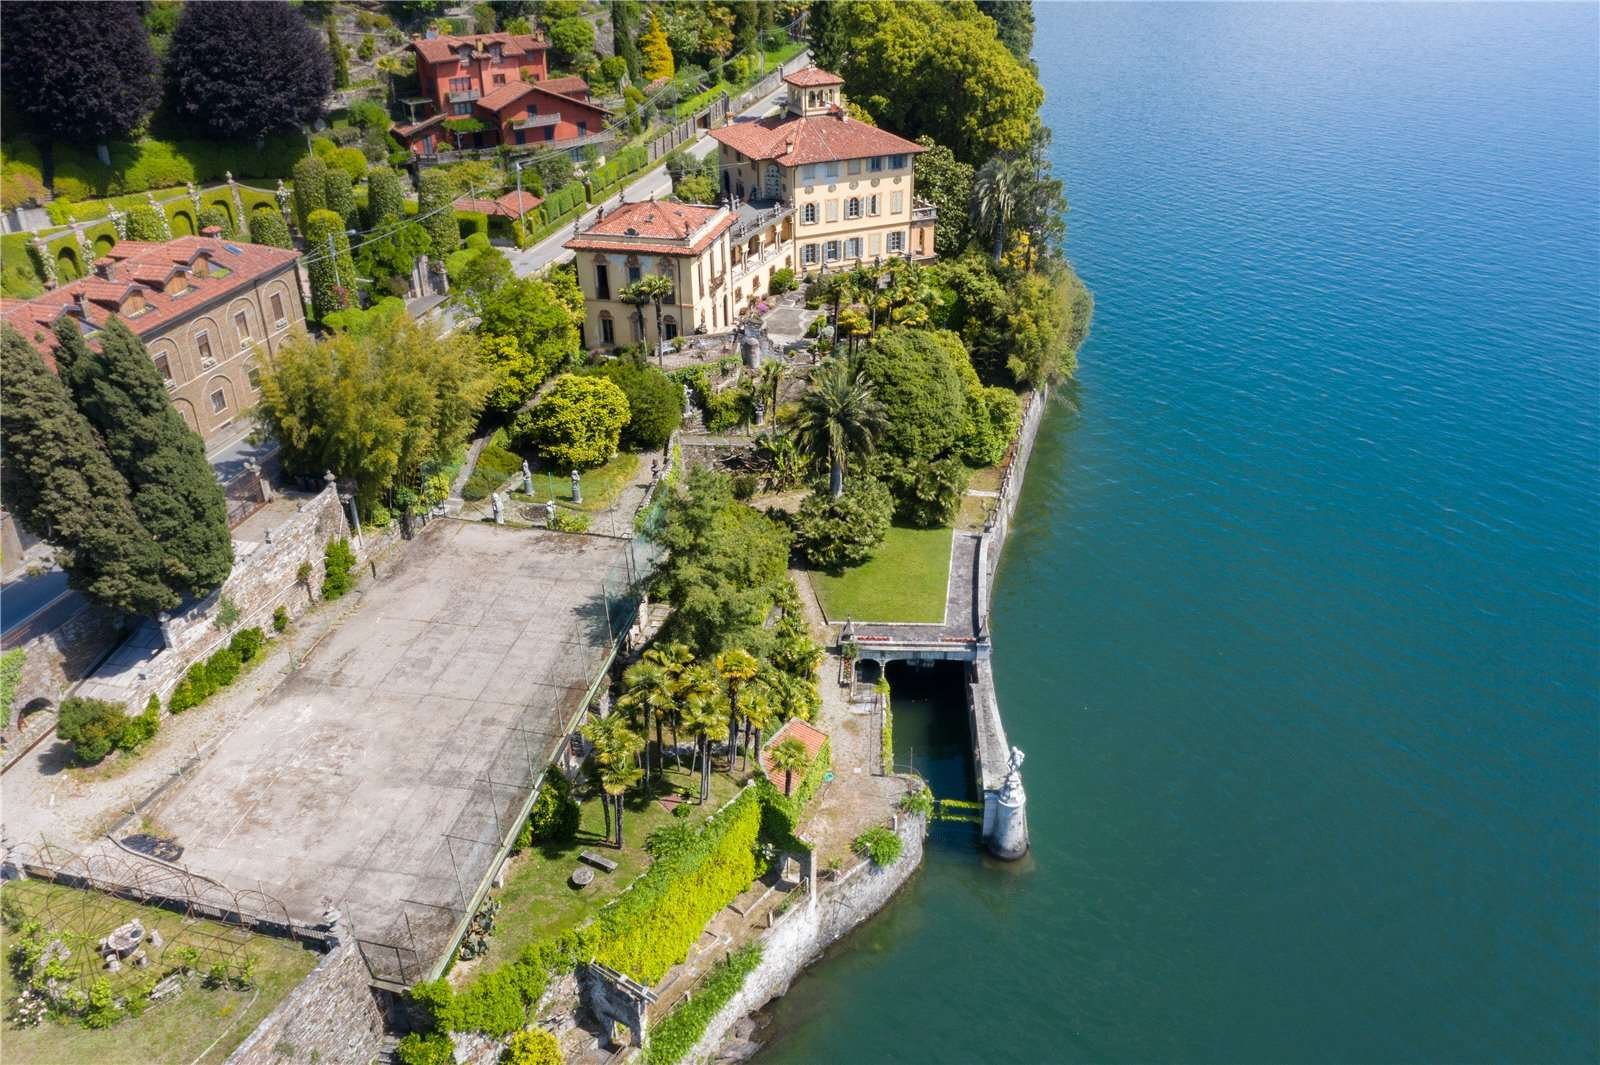 Francis YorkVilla L'Eremitaggio: Historic Villa On Lake Maggiore 16.jpg